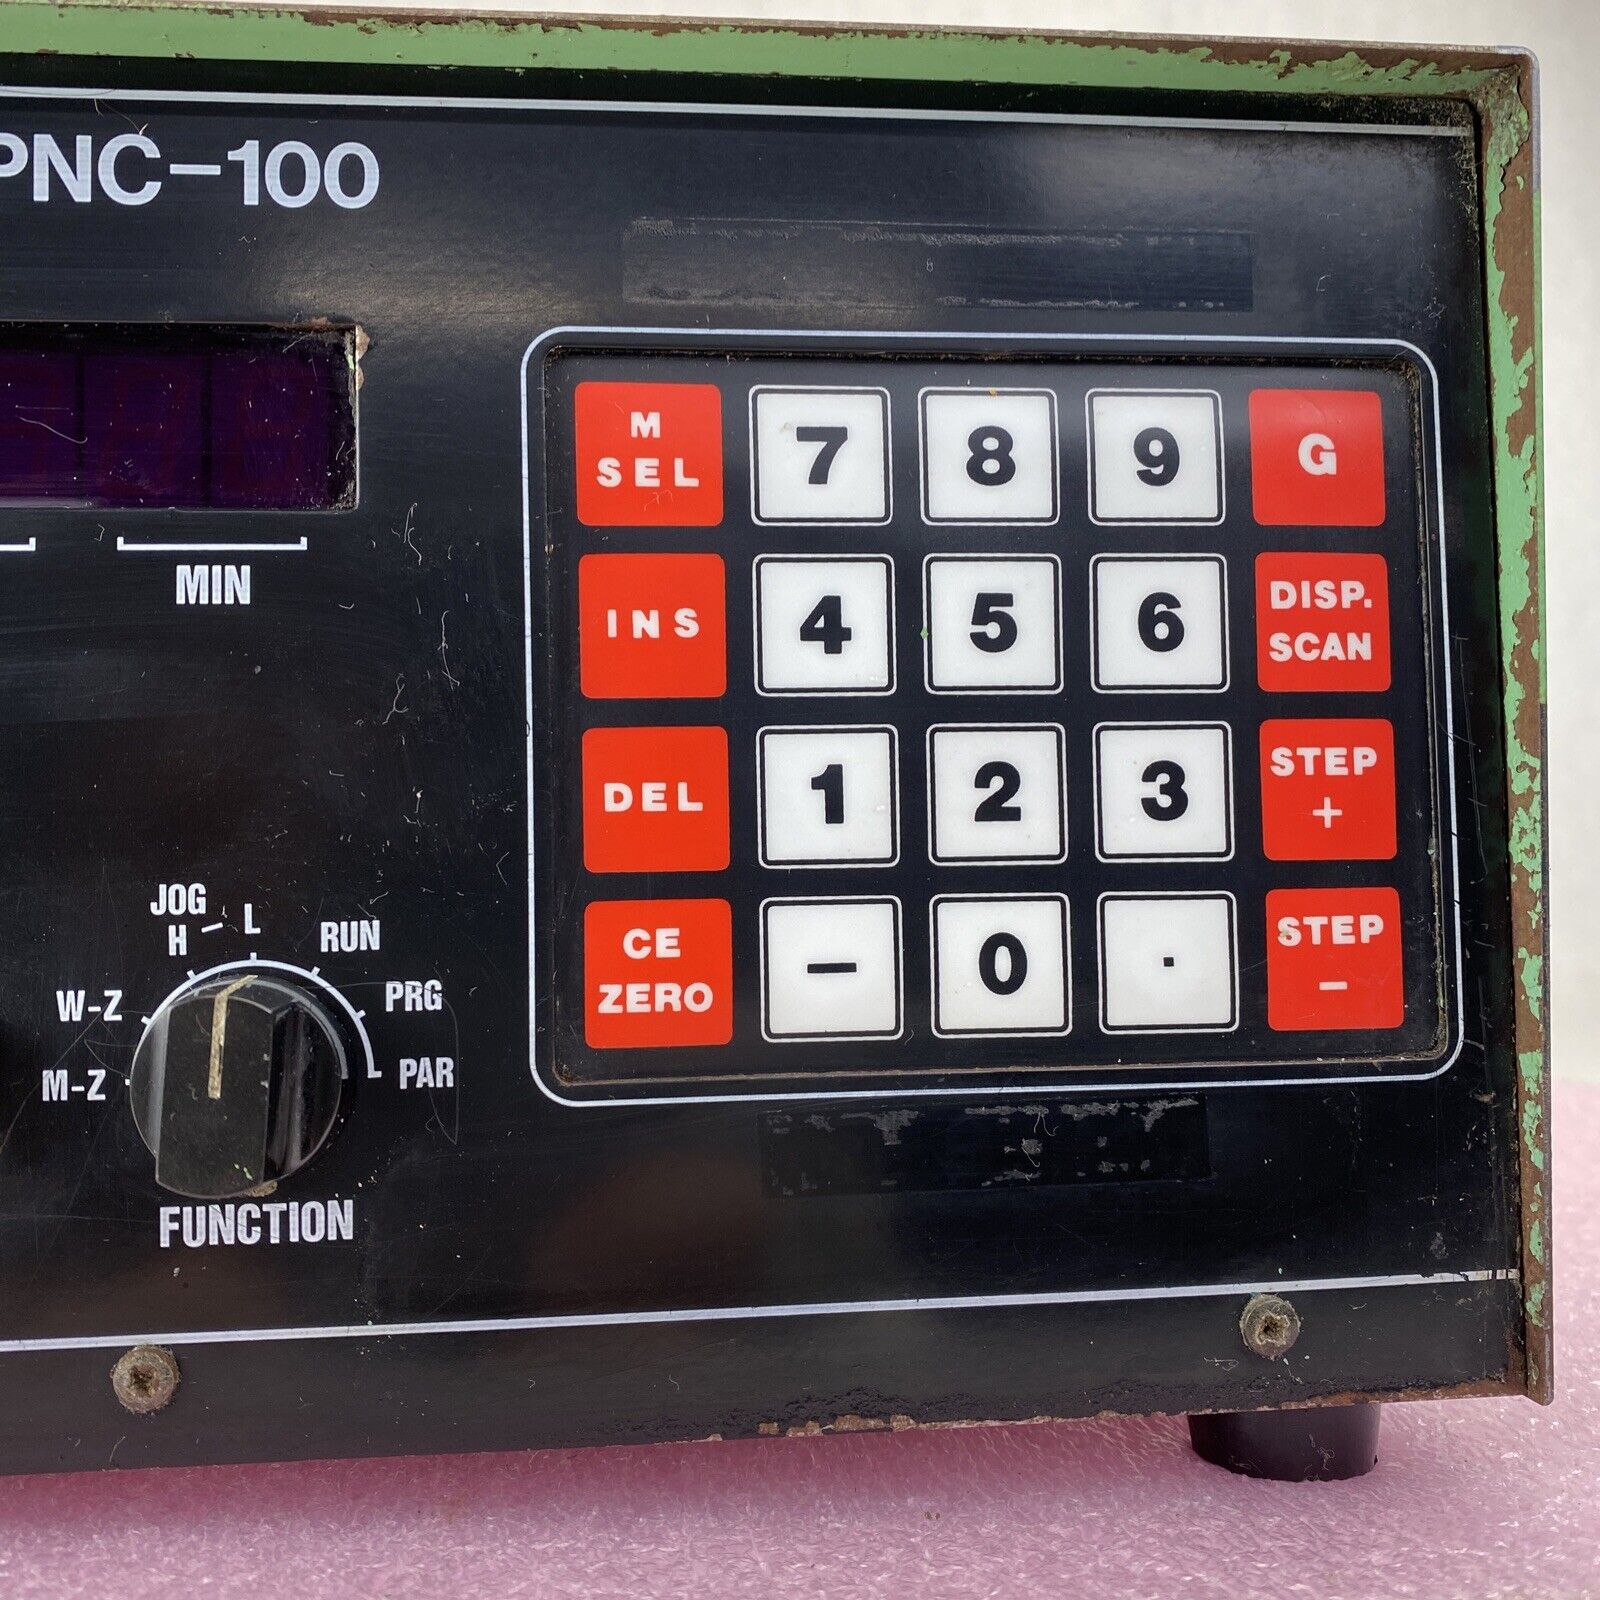 Yuasa CPNC-100 controller Indexer only